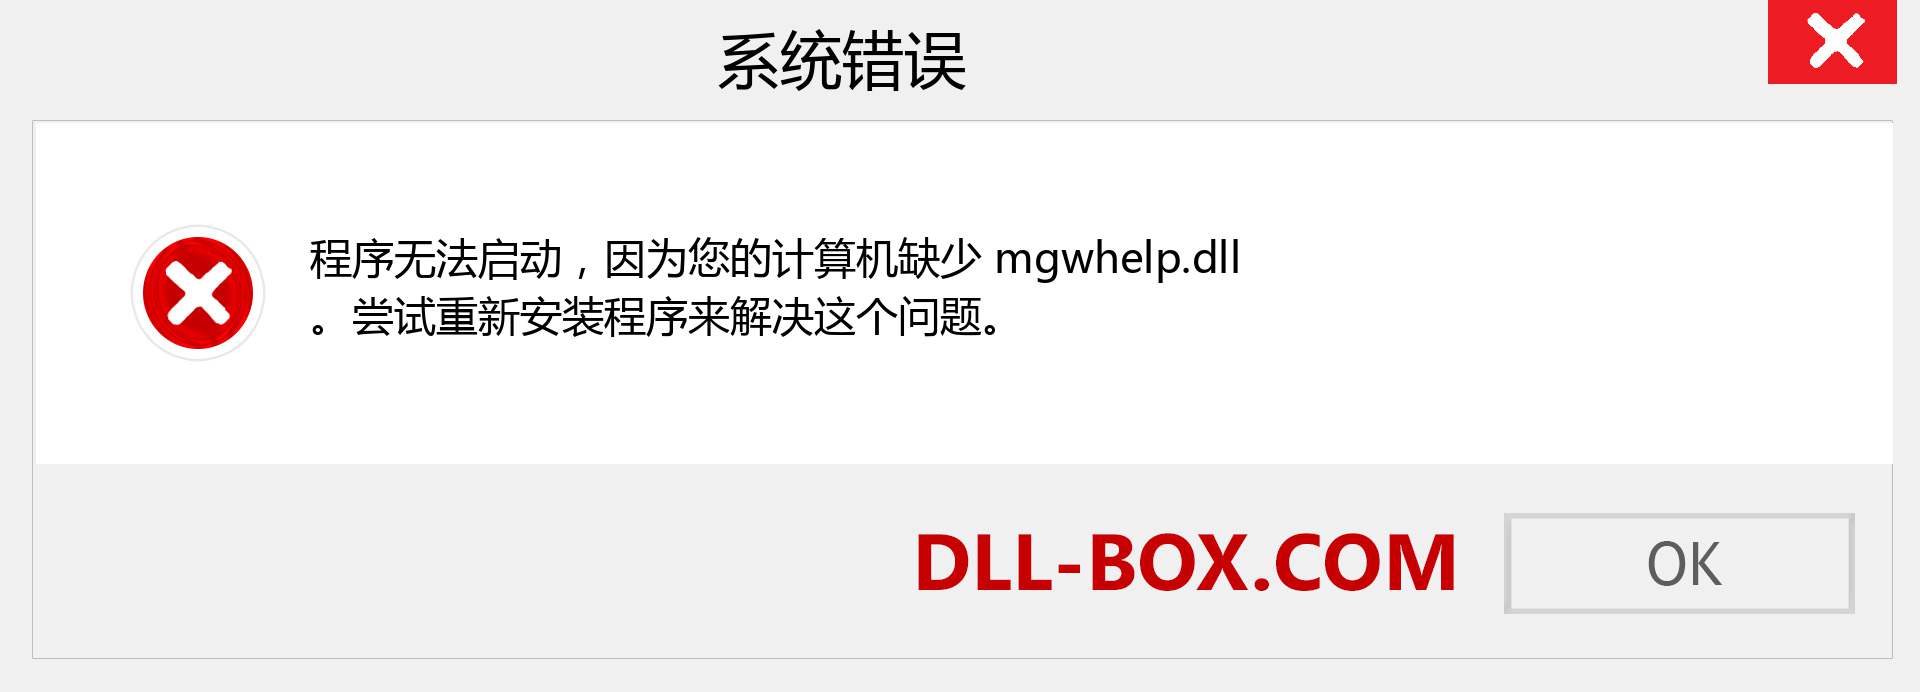 mgwhelp.dll 文件丢失？。 适用于 Windows 7、8、10 的下载 - 修复 Windows、照片、图像上的 mgwhelp dll 丢失错误